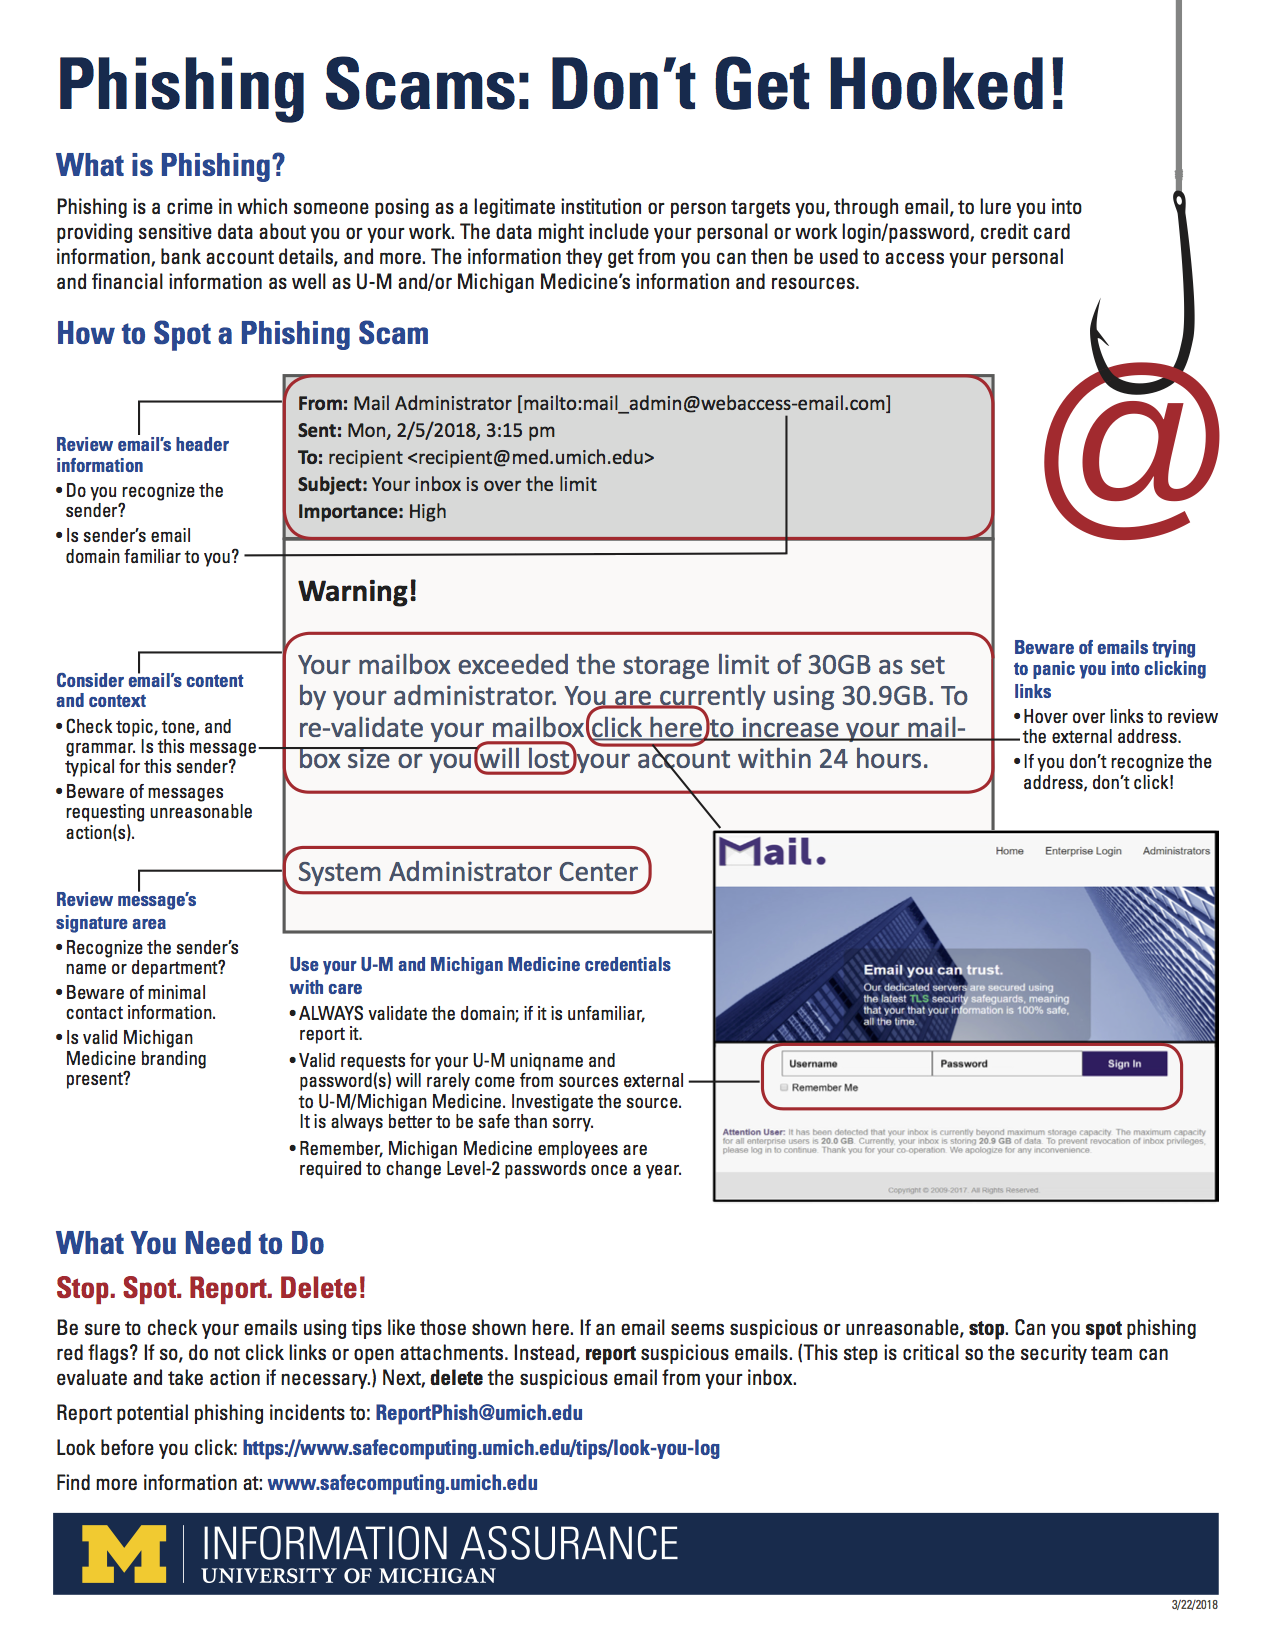 Image of the anti-phishing tip sheet in English.